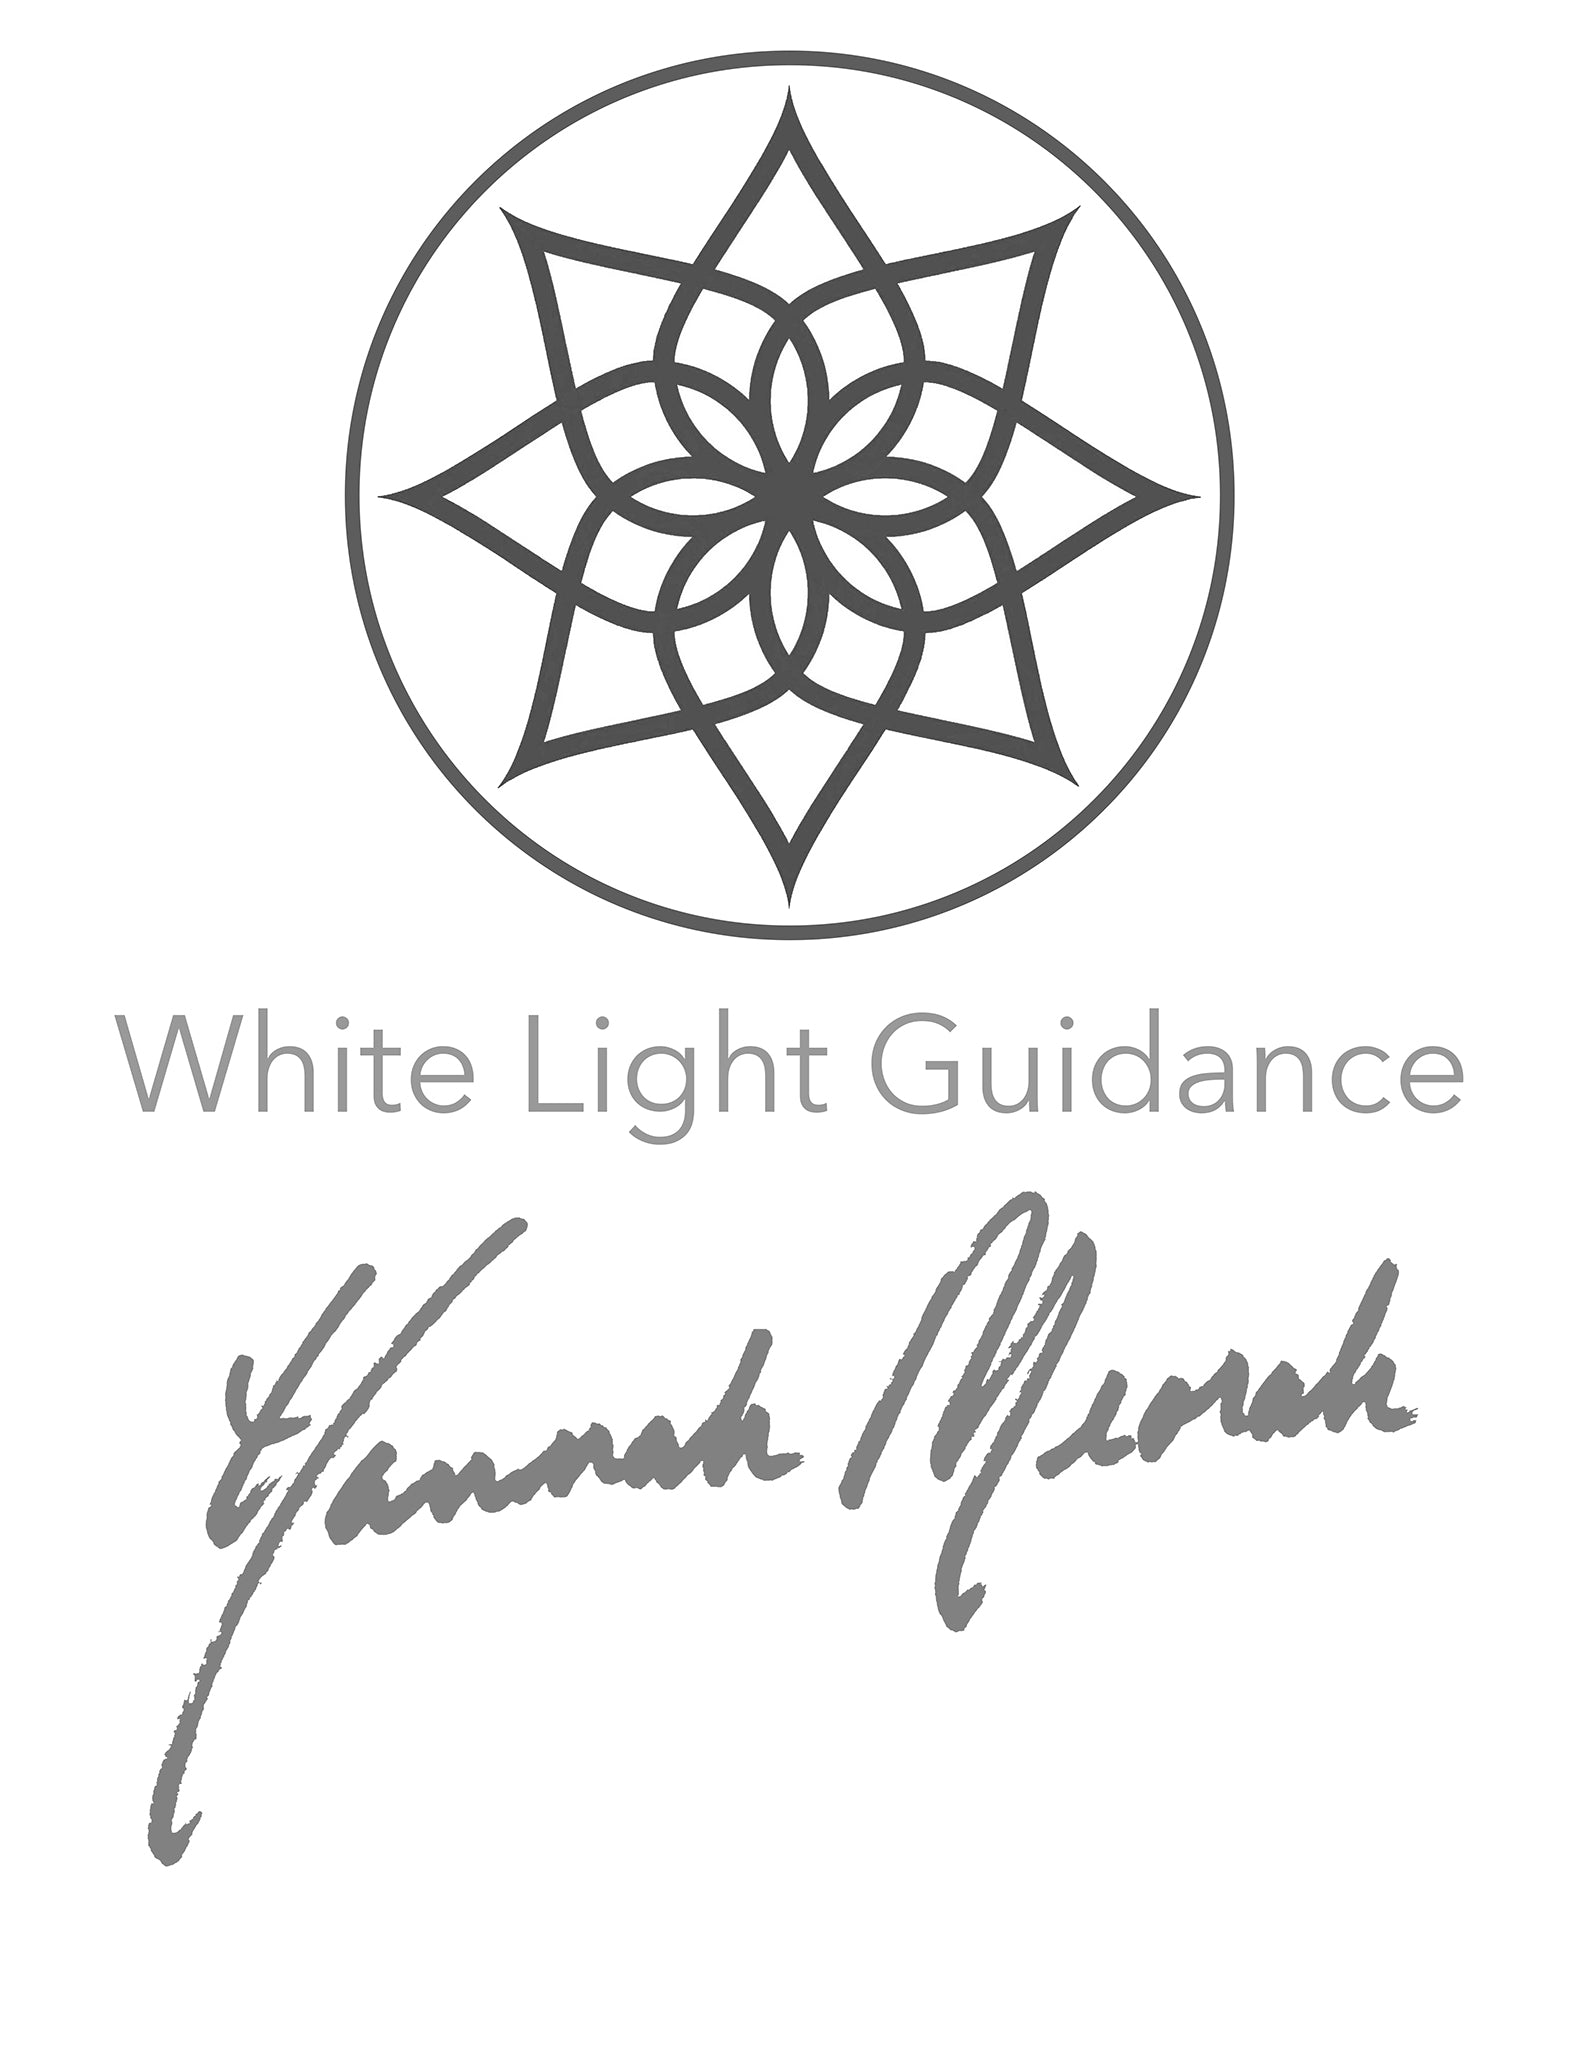 WHITE LIGHT GUIDANCE